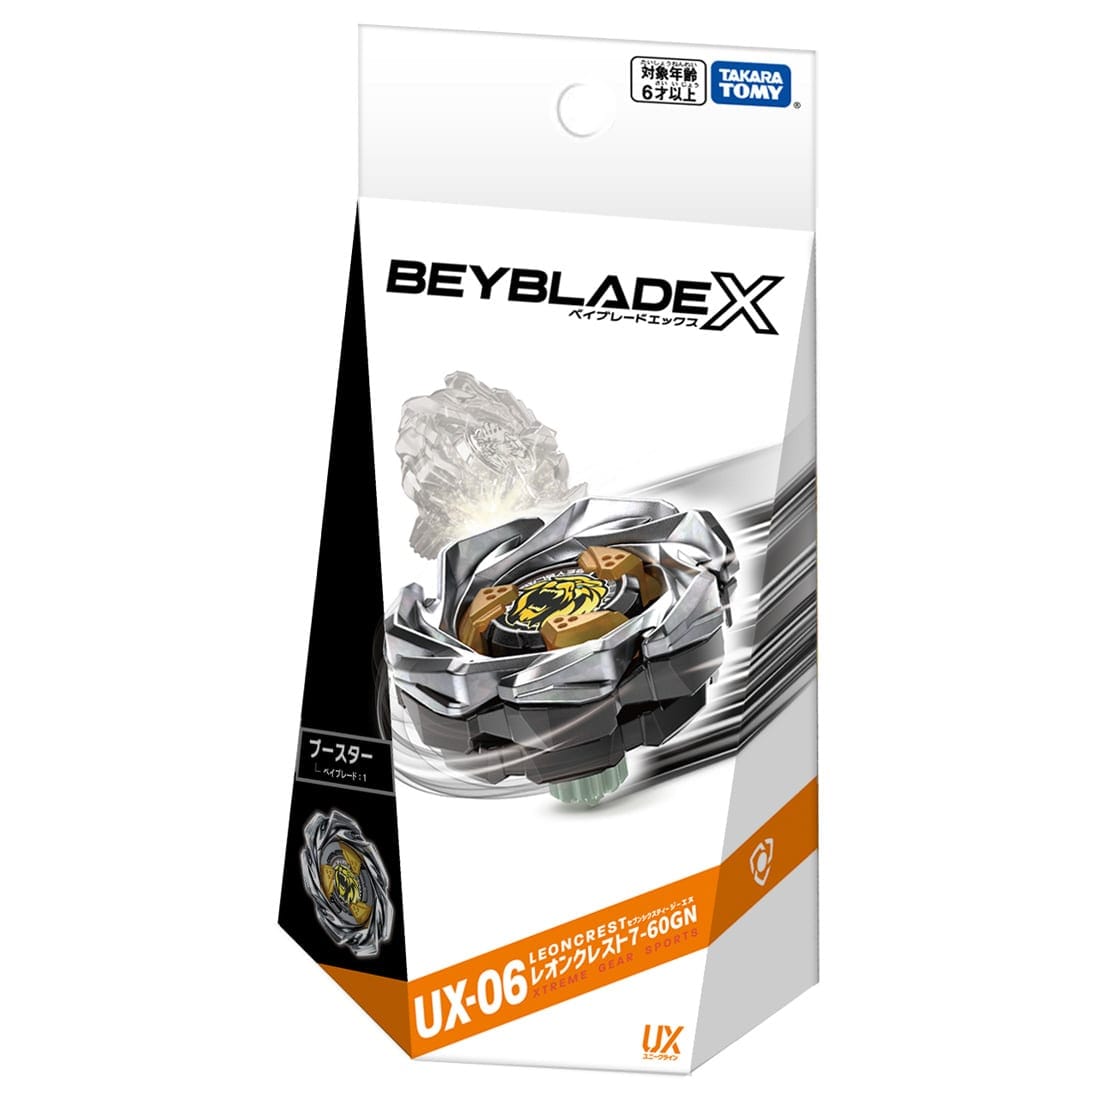 BEYBLADE X『UX-06 ブースター レオンクレスト7-60GN』ベイブレード-003